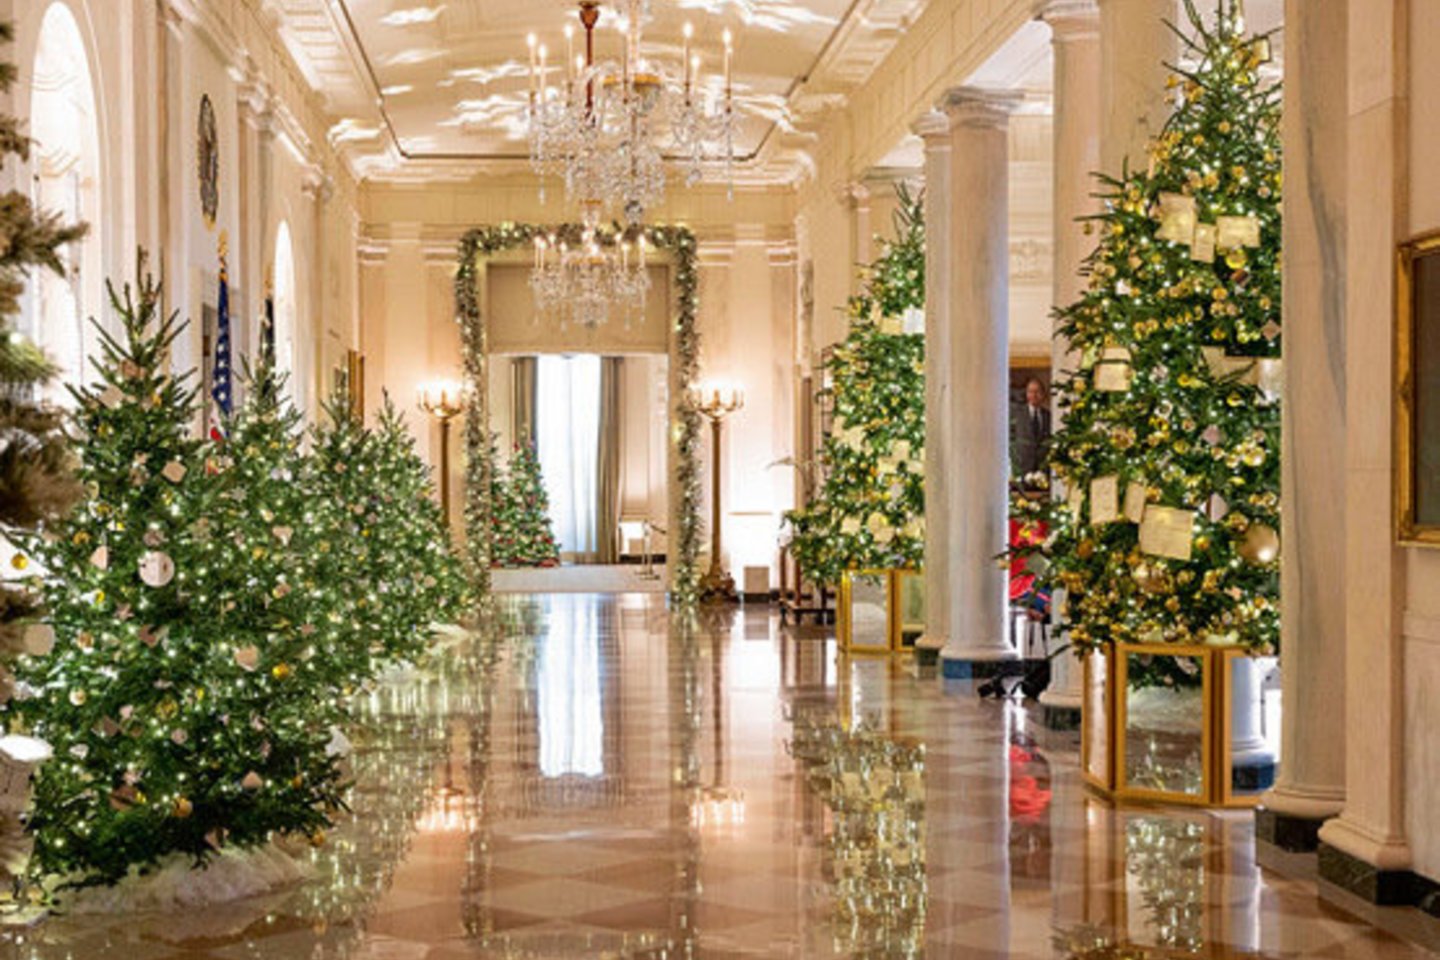  Visuose Baltuosiuose rūmuose yra 77 Kalėdų eglės su 83 615 šventinių žibintų, kurie puošia medžius, girliandas, vainikus ir vitrinas.<br> Scanpix nuotr.